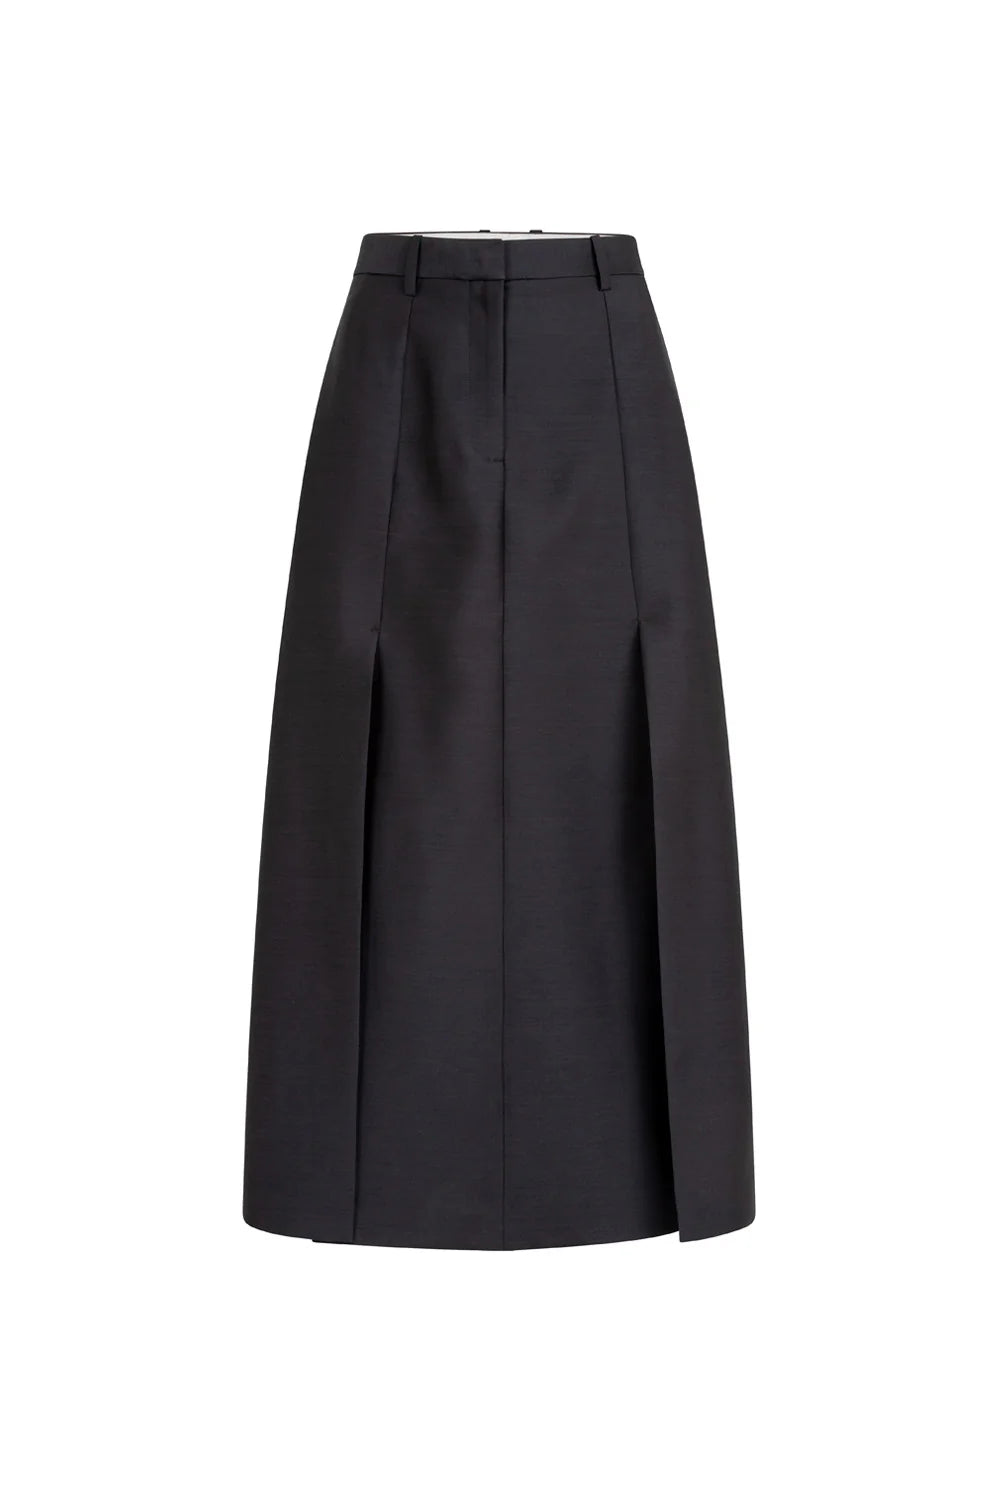 Elodie Skirt in Black